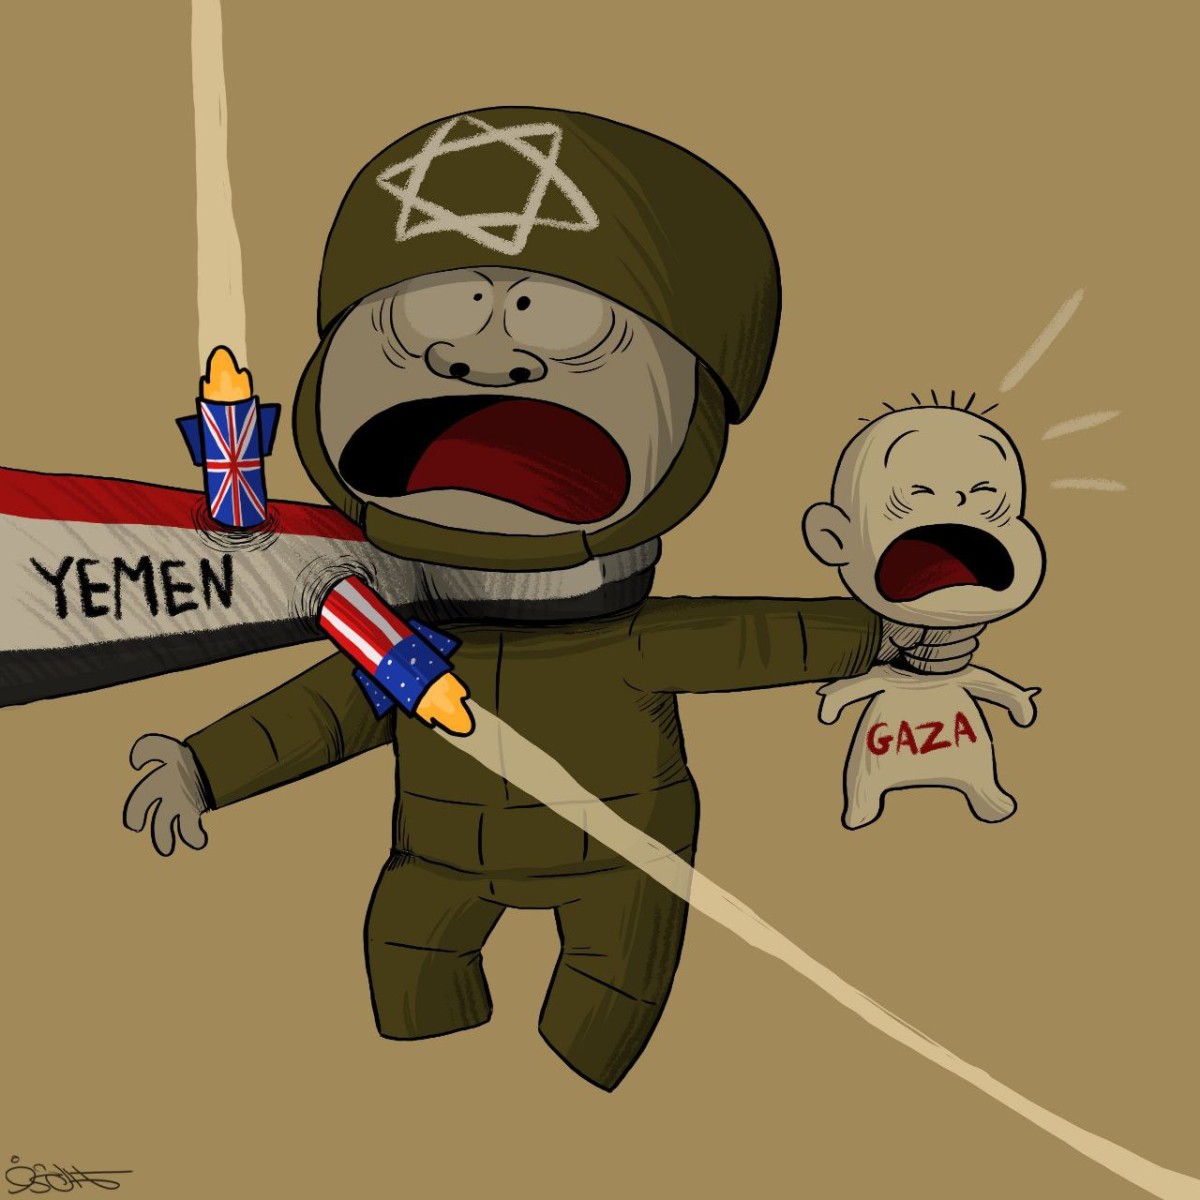 No description of Yemen